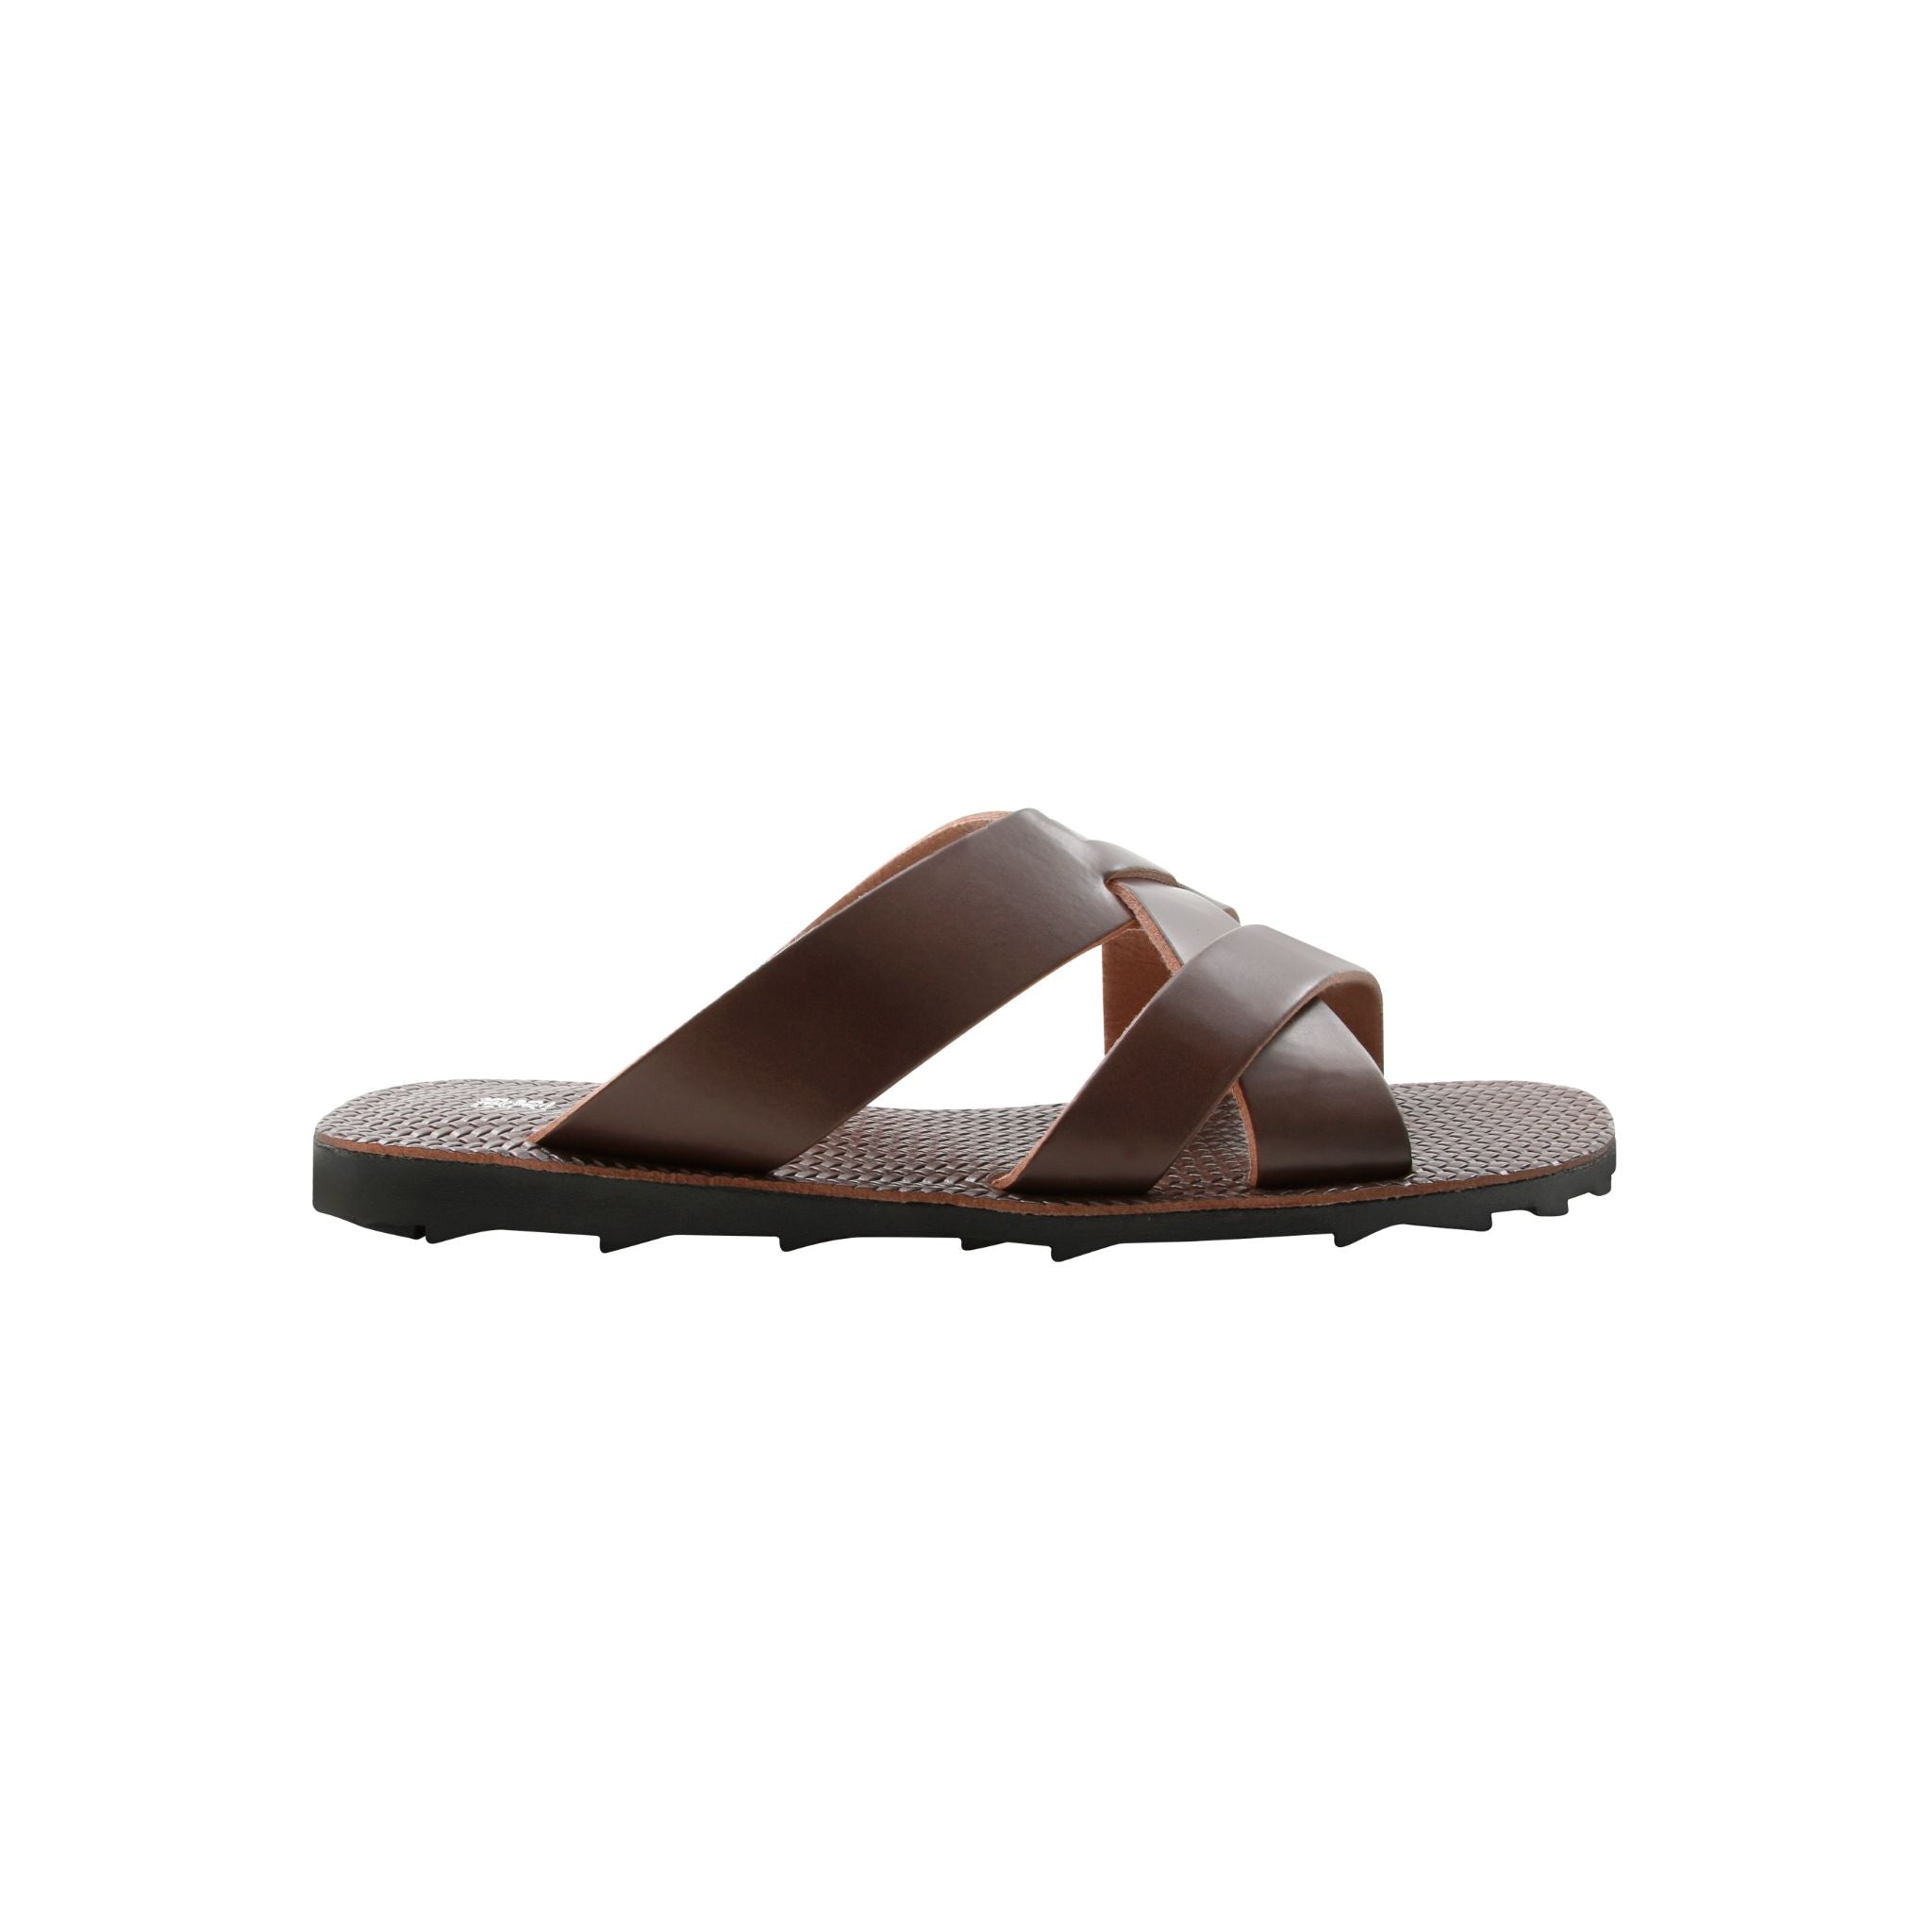 BRUNO CO Leather Sandal - 3908 EUGENE - BROWN